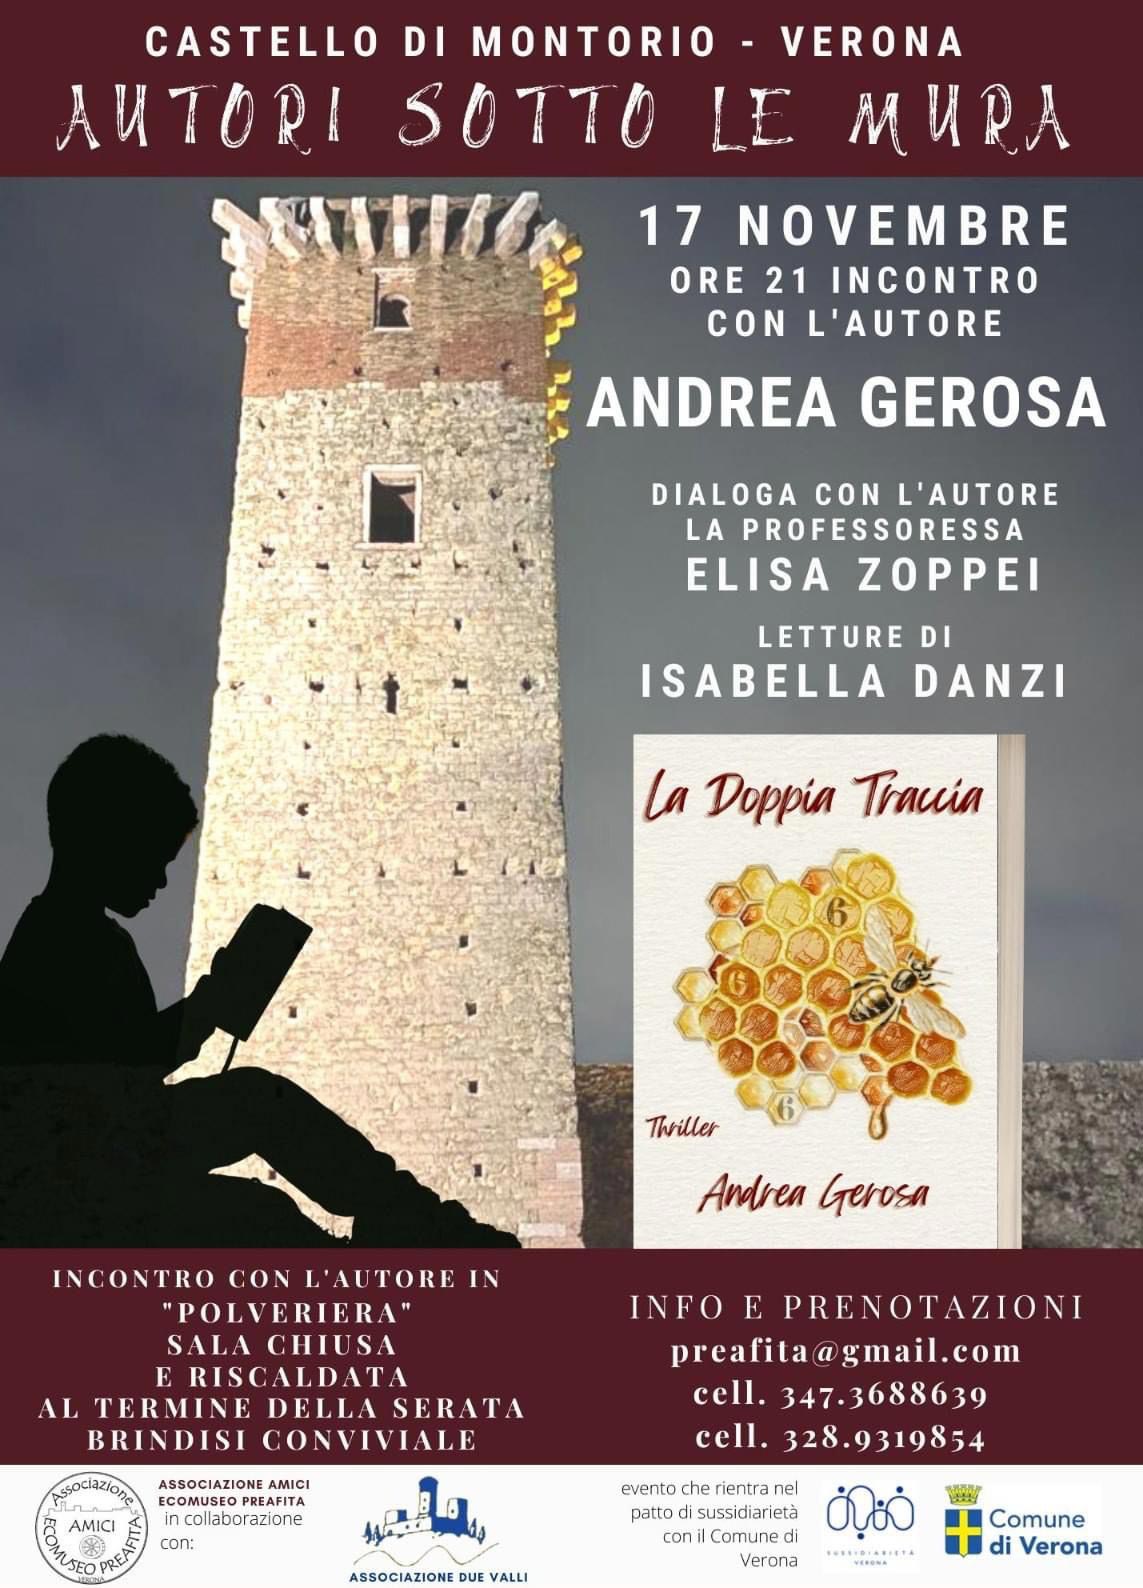 Castello di Montorio - Autori sotto le mura - Andrea Gerosa, La doppia traccia